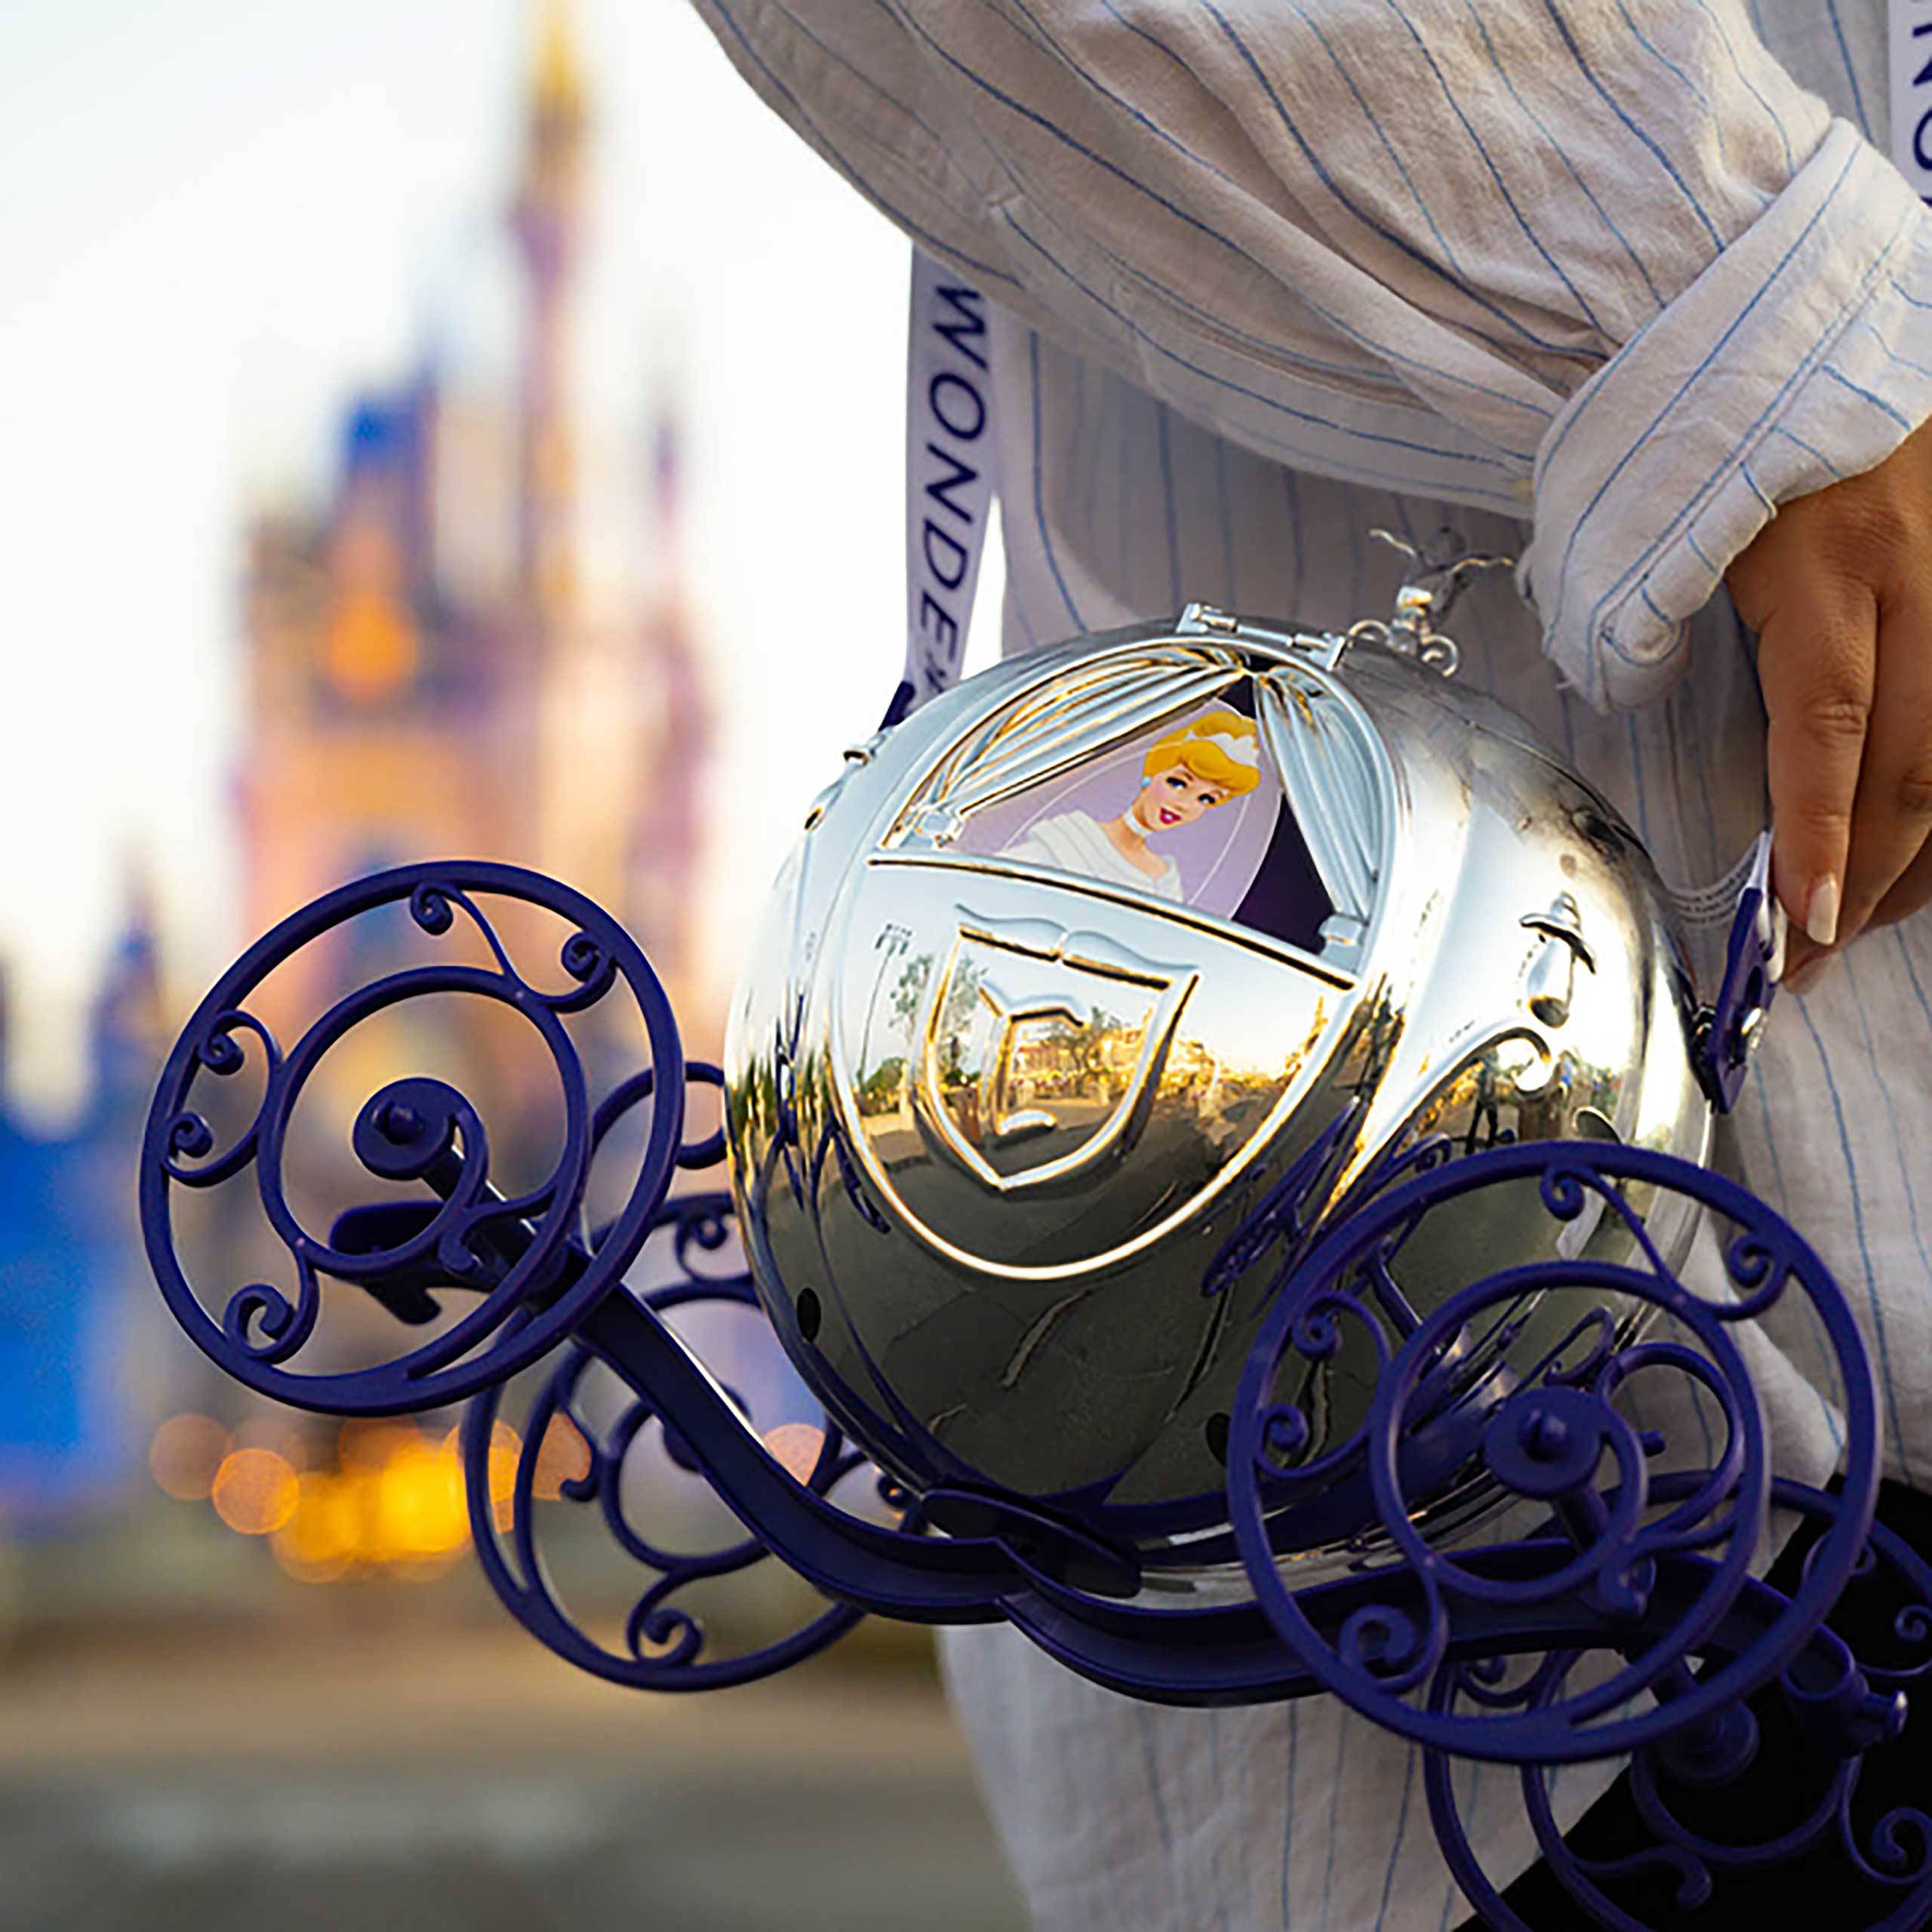 Disney 100 Cinderella Coach popcorn bucket